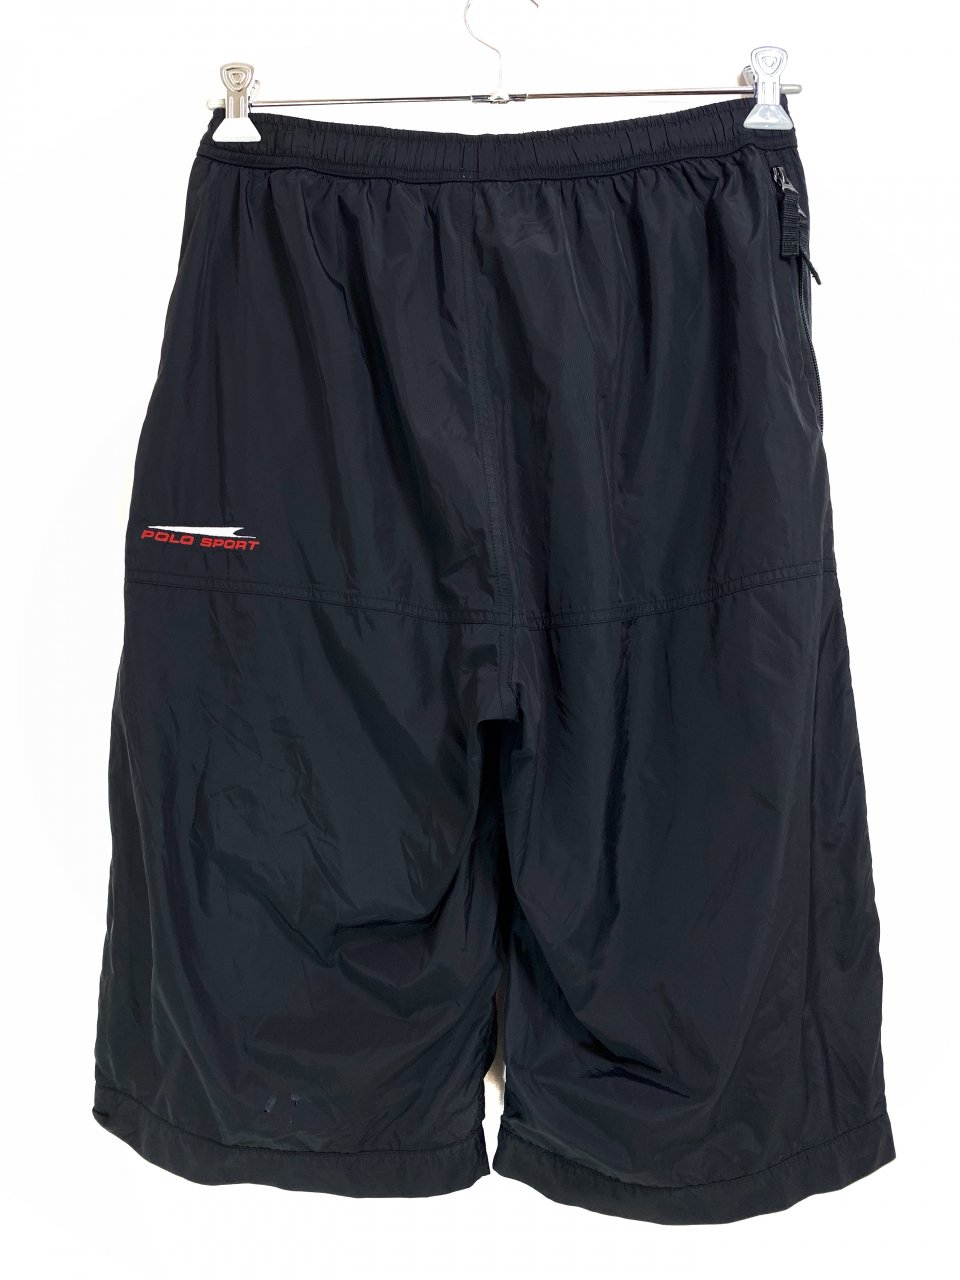 90s~00s POLO SPORT Side Zip Nylon Shorts 黒 L ポロスポーツ